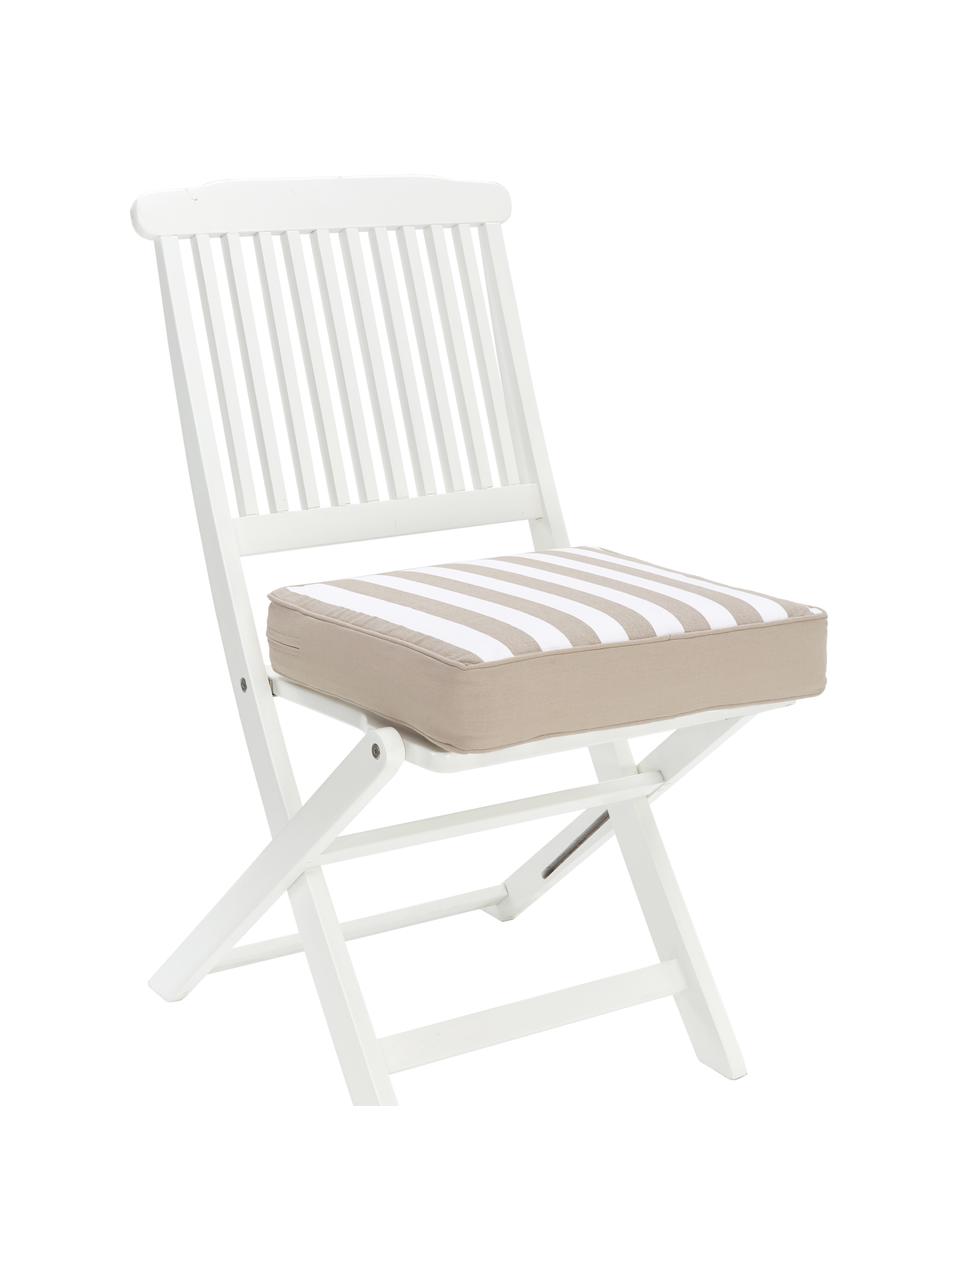 Vysoký pruhovaný podsedák na židli Timon, Taupe, bílá, Š 40 cm, D 40 cm